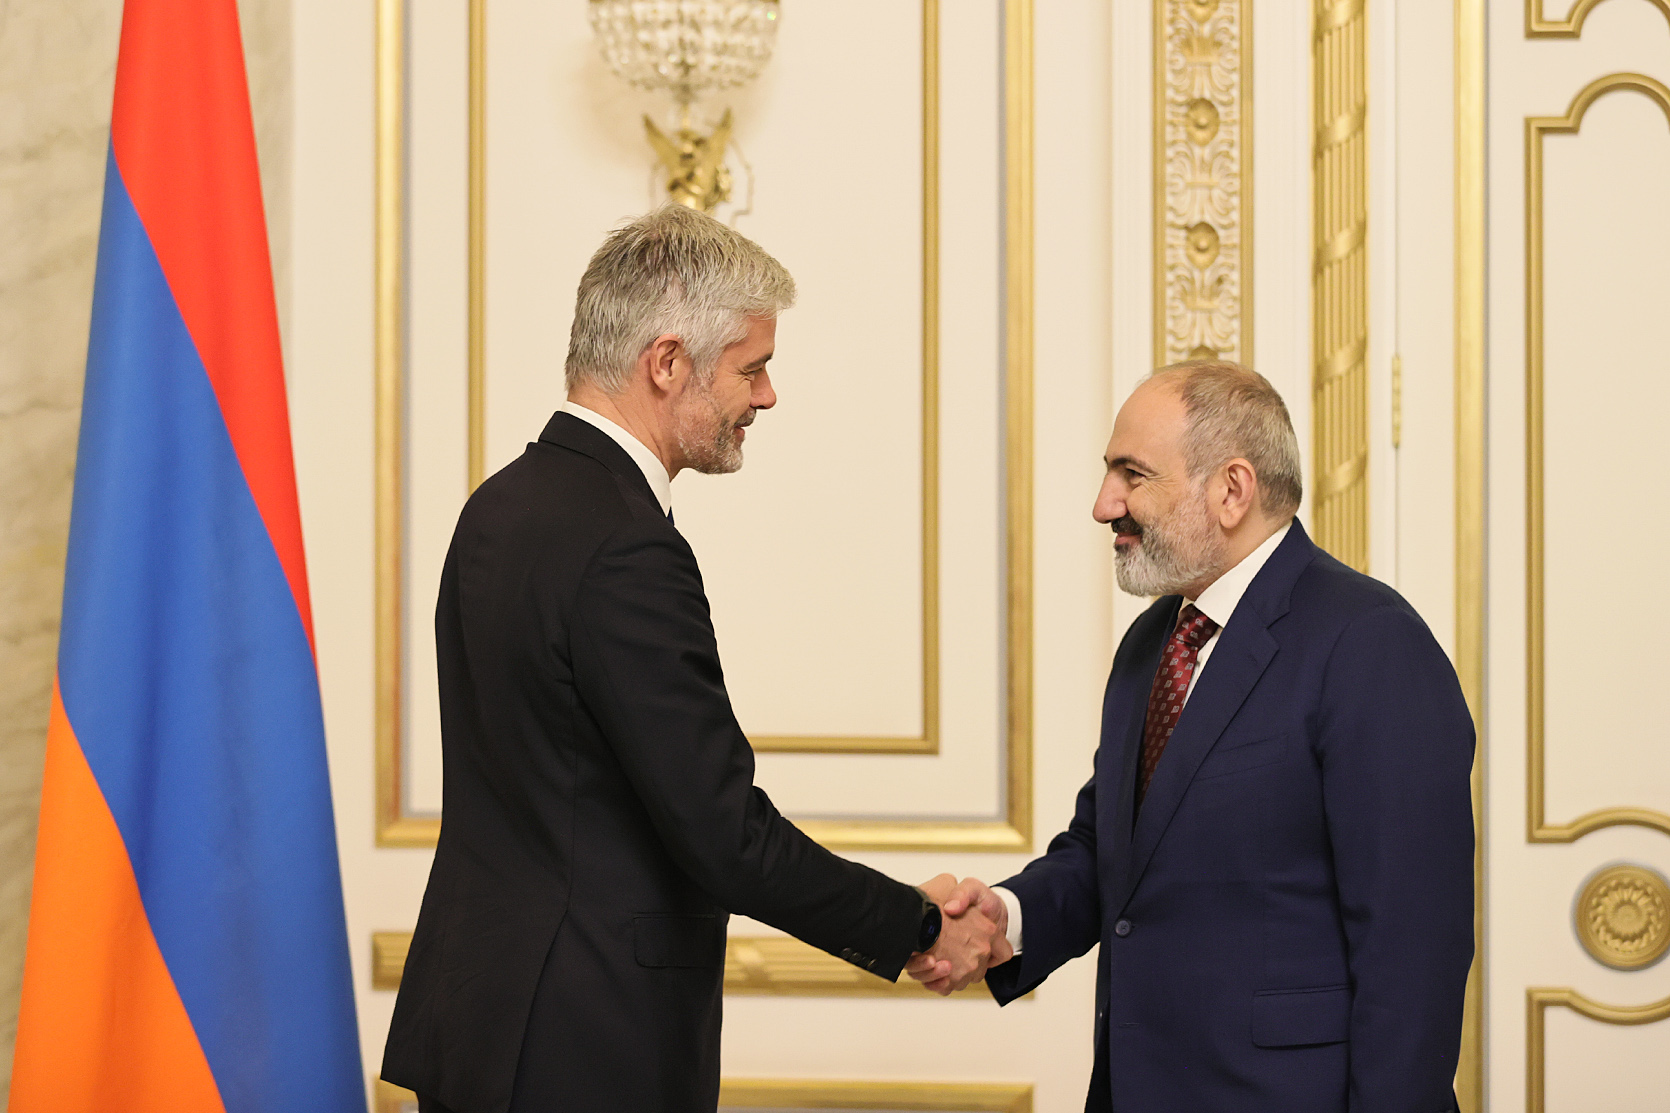 Лоран Вокье: Мы очень хорошо понимаем ключевое значение Сюника для Армении